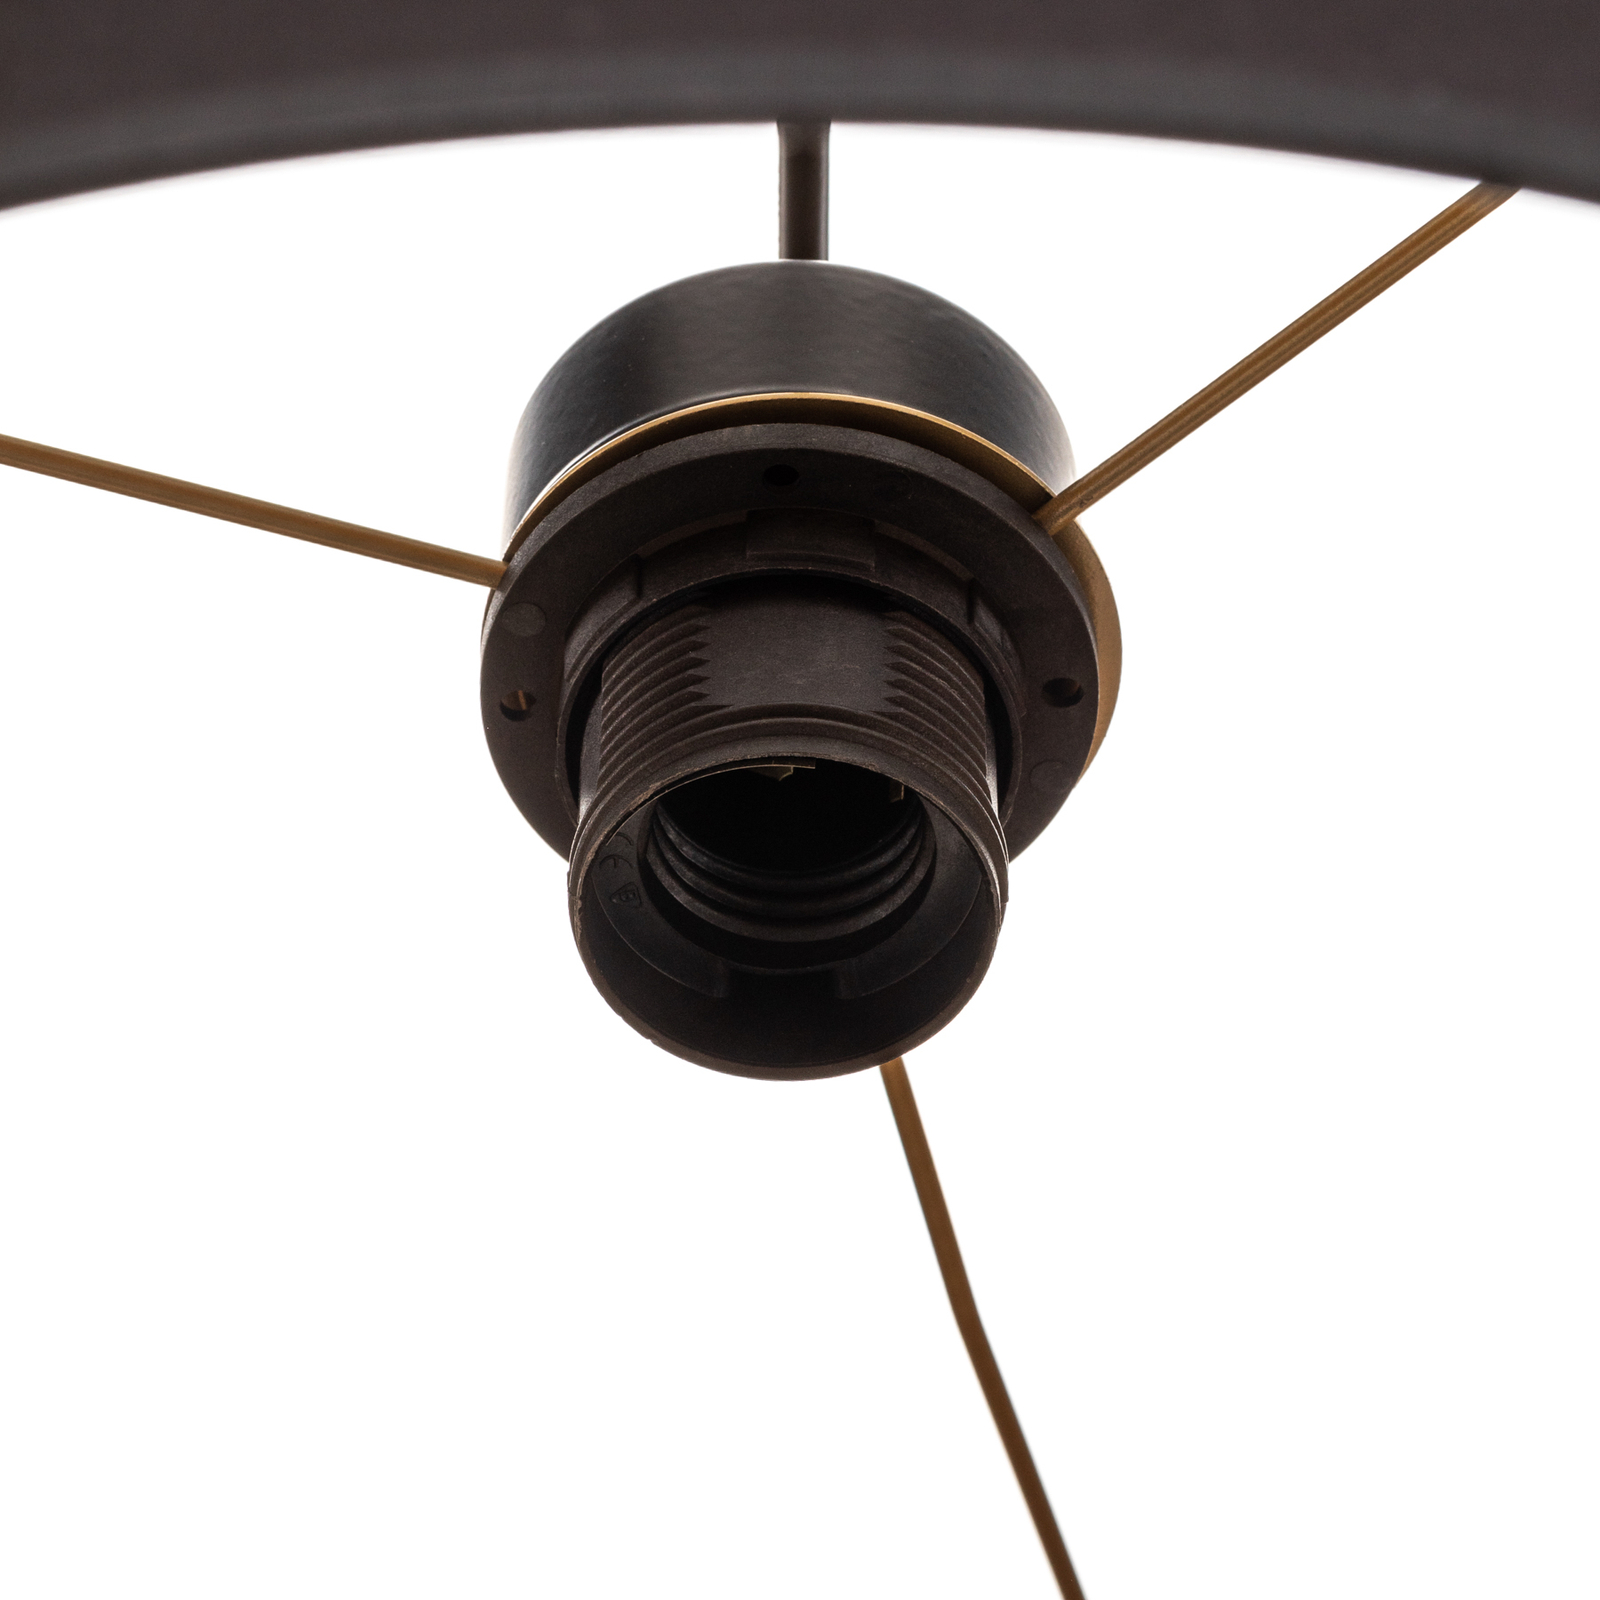 Hanglamp Soho cilindrisch 1-lamp 40cm zwart/goud